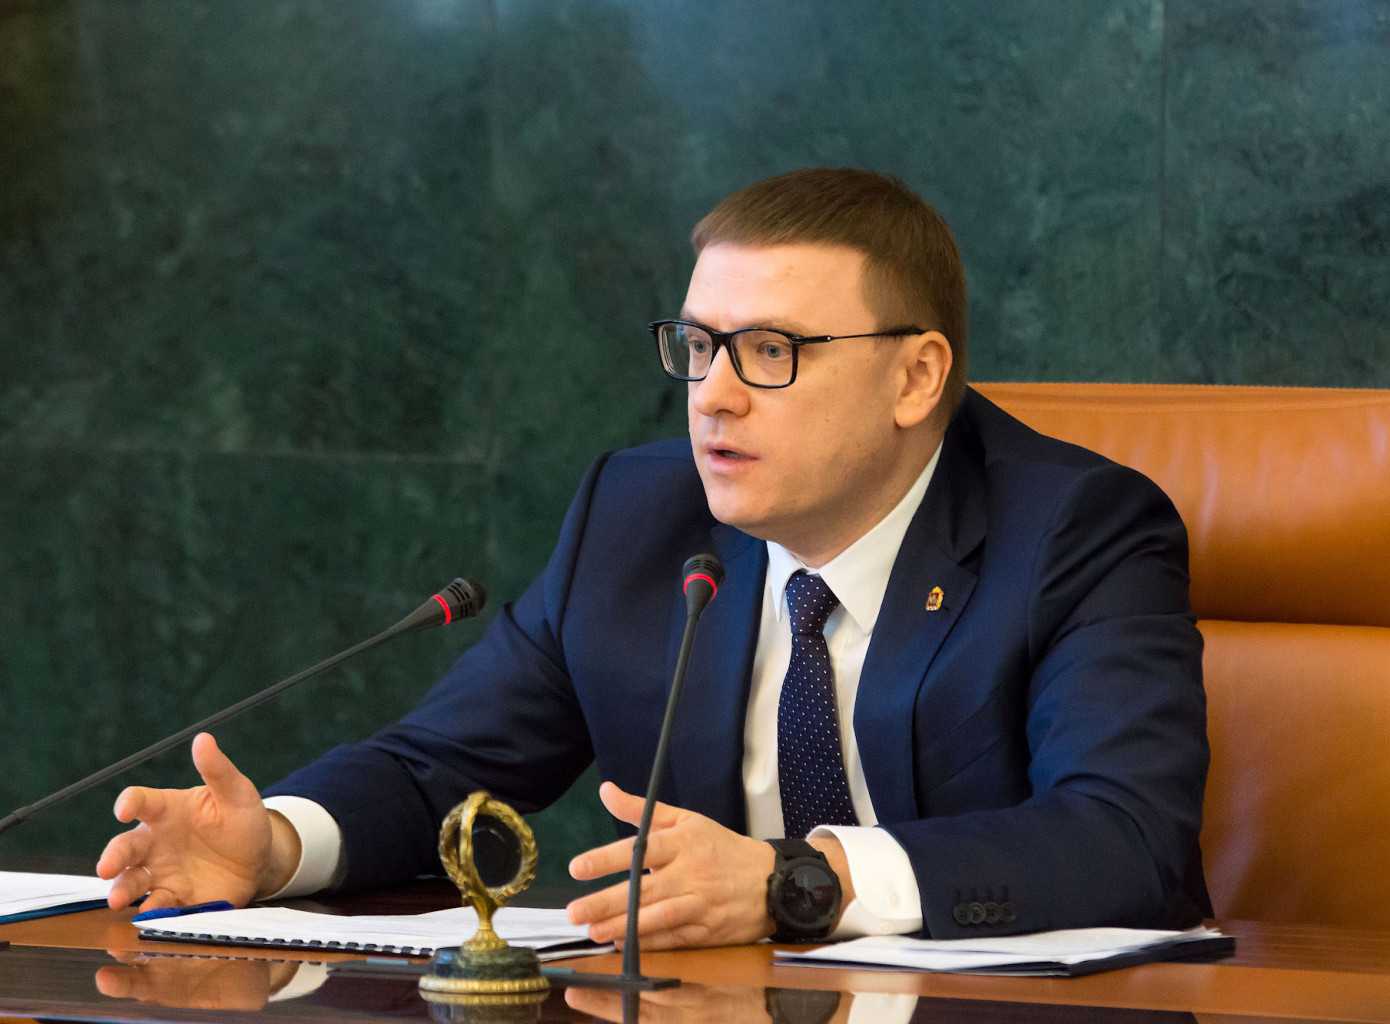 Челябинский губернатор назвал главную поправку в Конституции